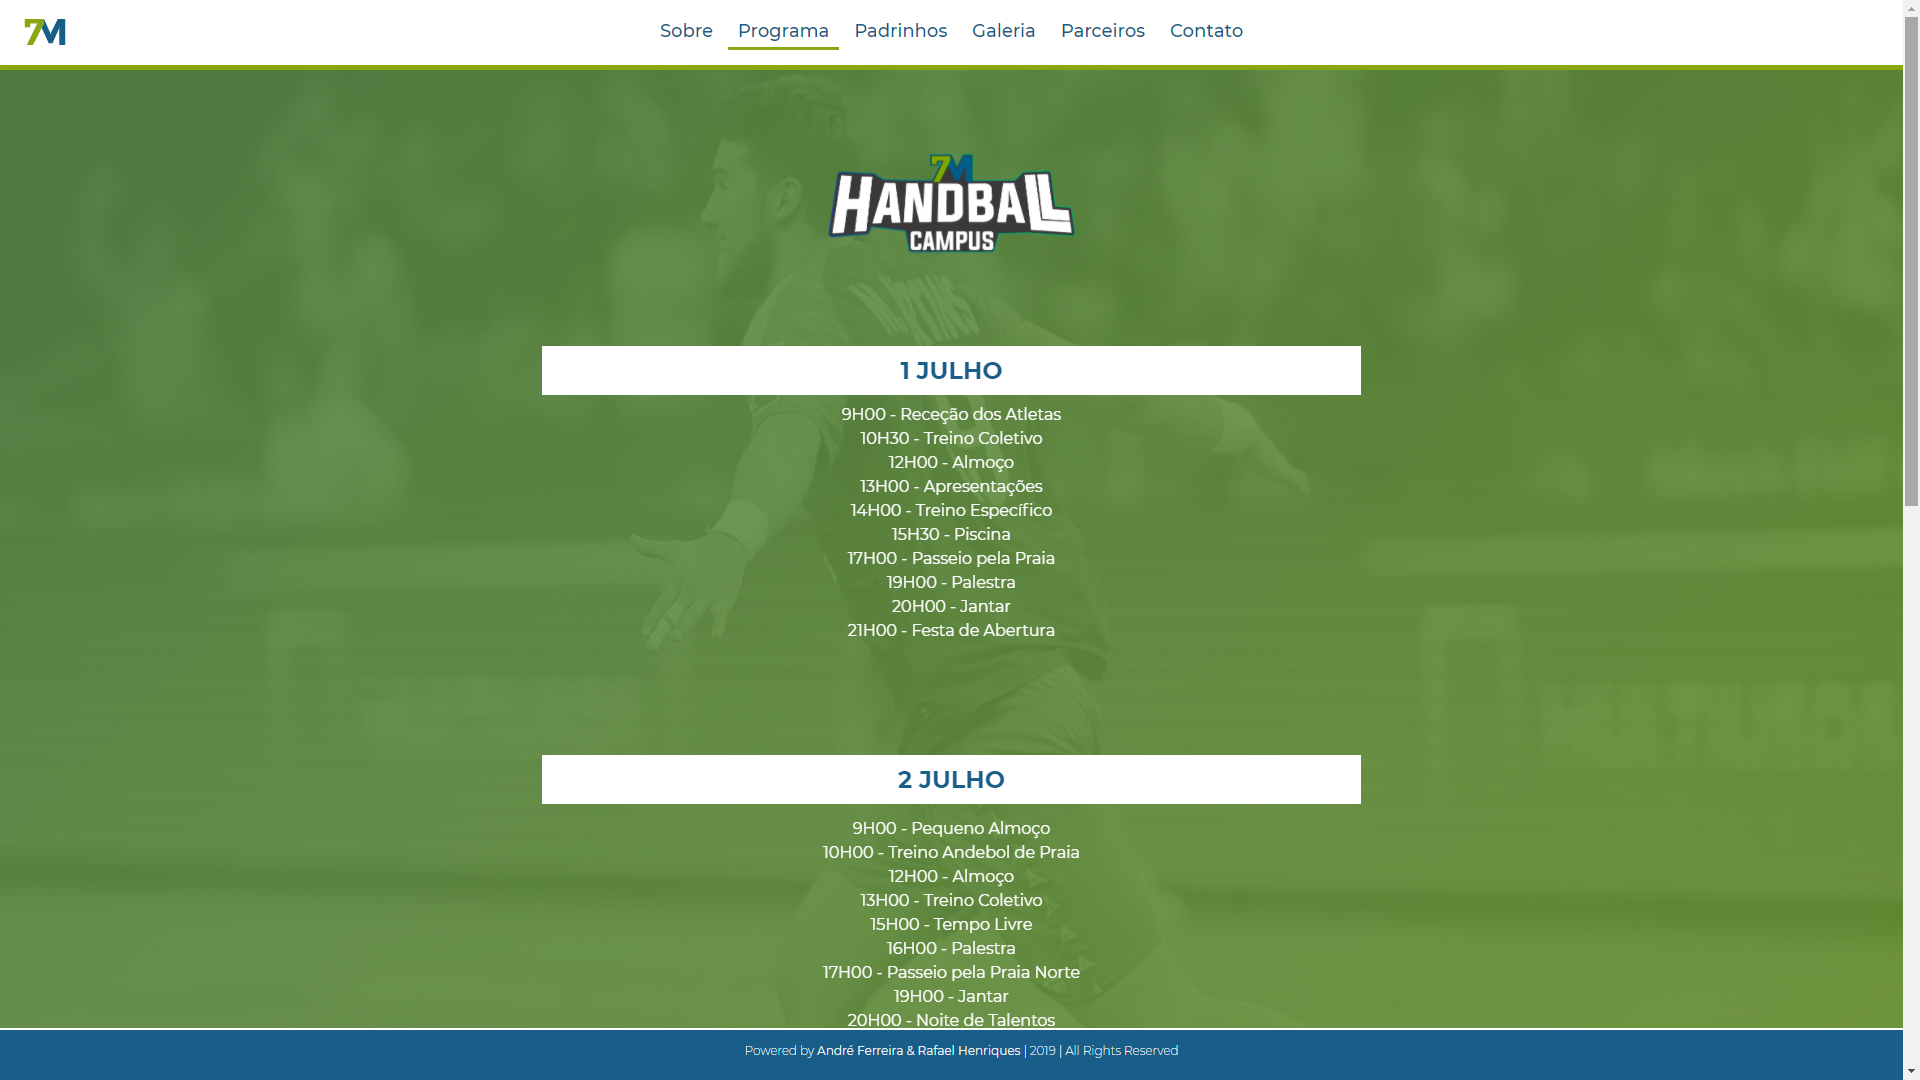 7M_Handball_Campus_2